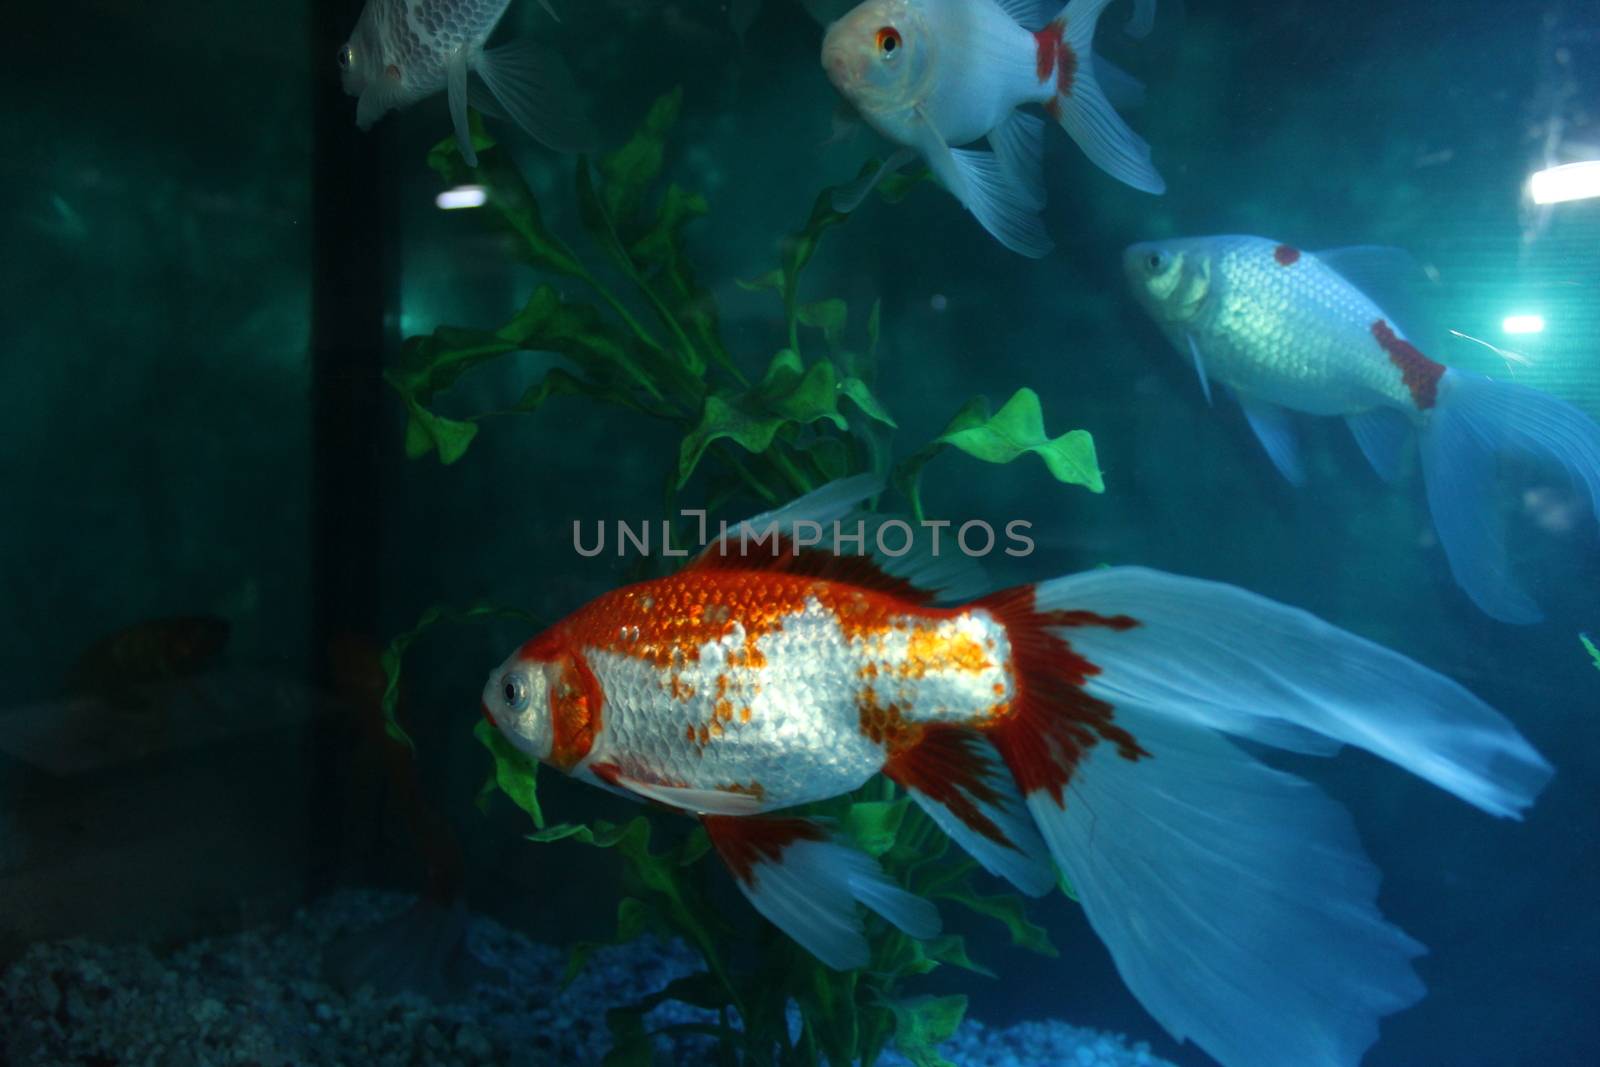 Aquarium by nurjan100